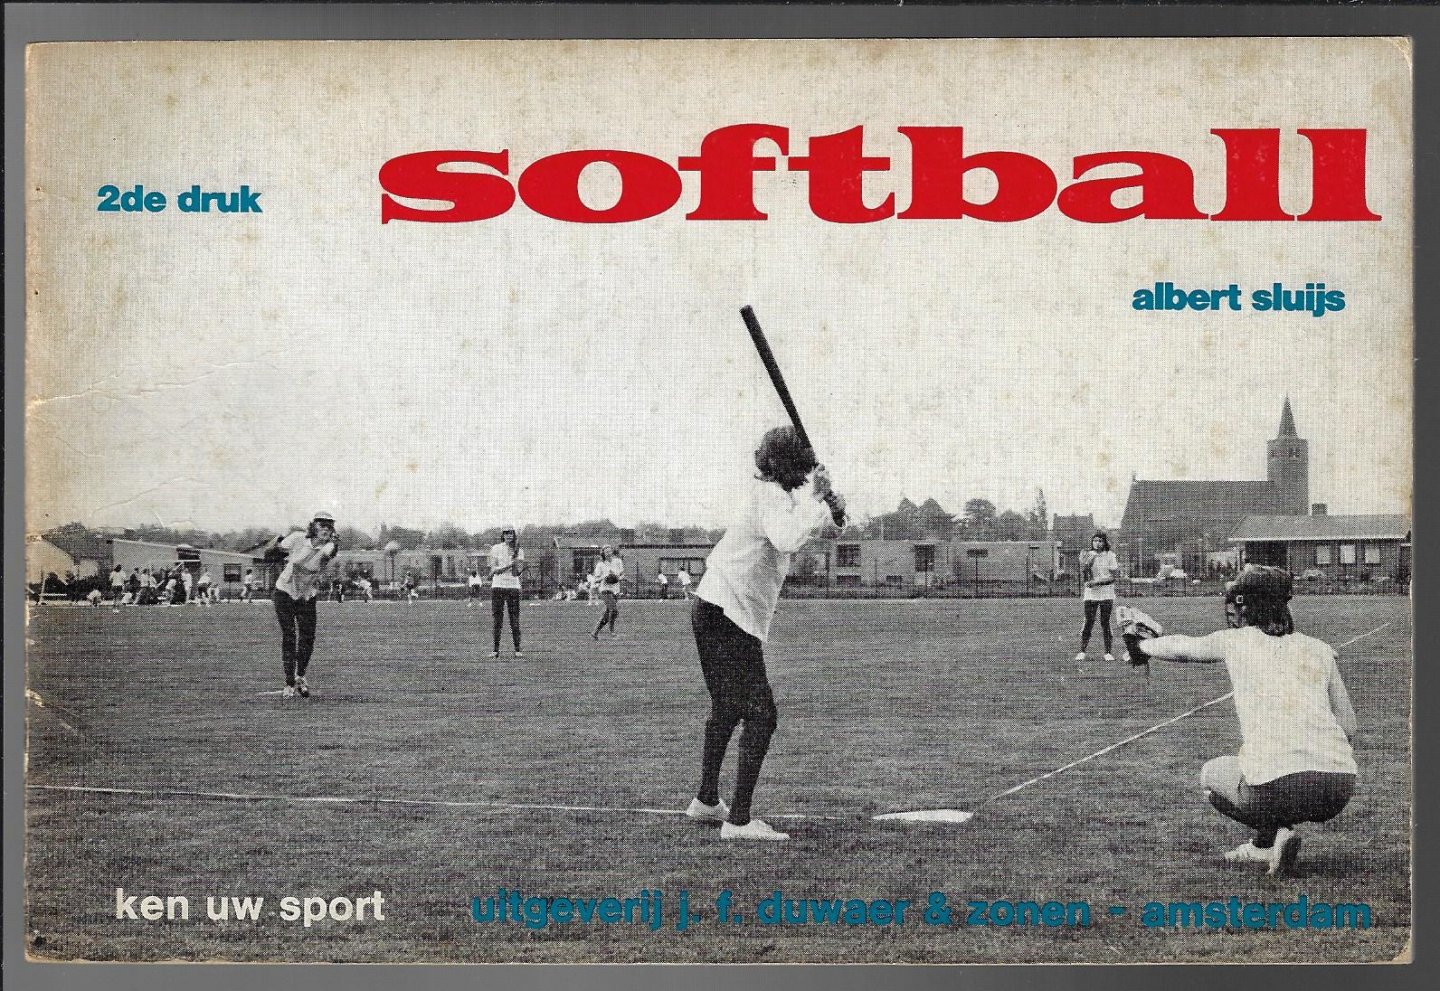 Sluijs, Albert - Ken uw sport -softball